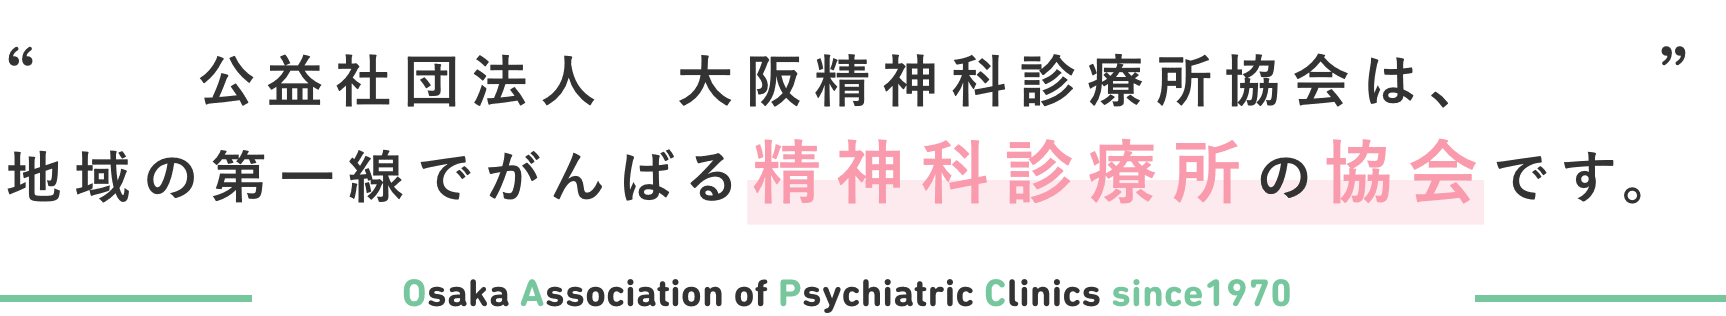 公益社団法人　大阪精神科診療所協会は、 地域の第一線でがんばる精神科診療所の協会です。